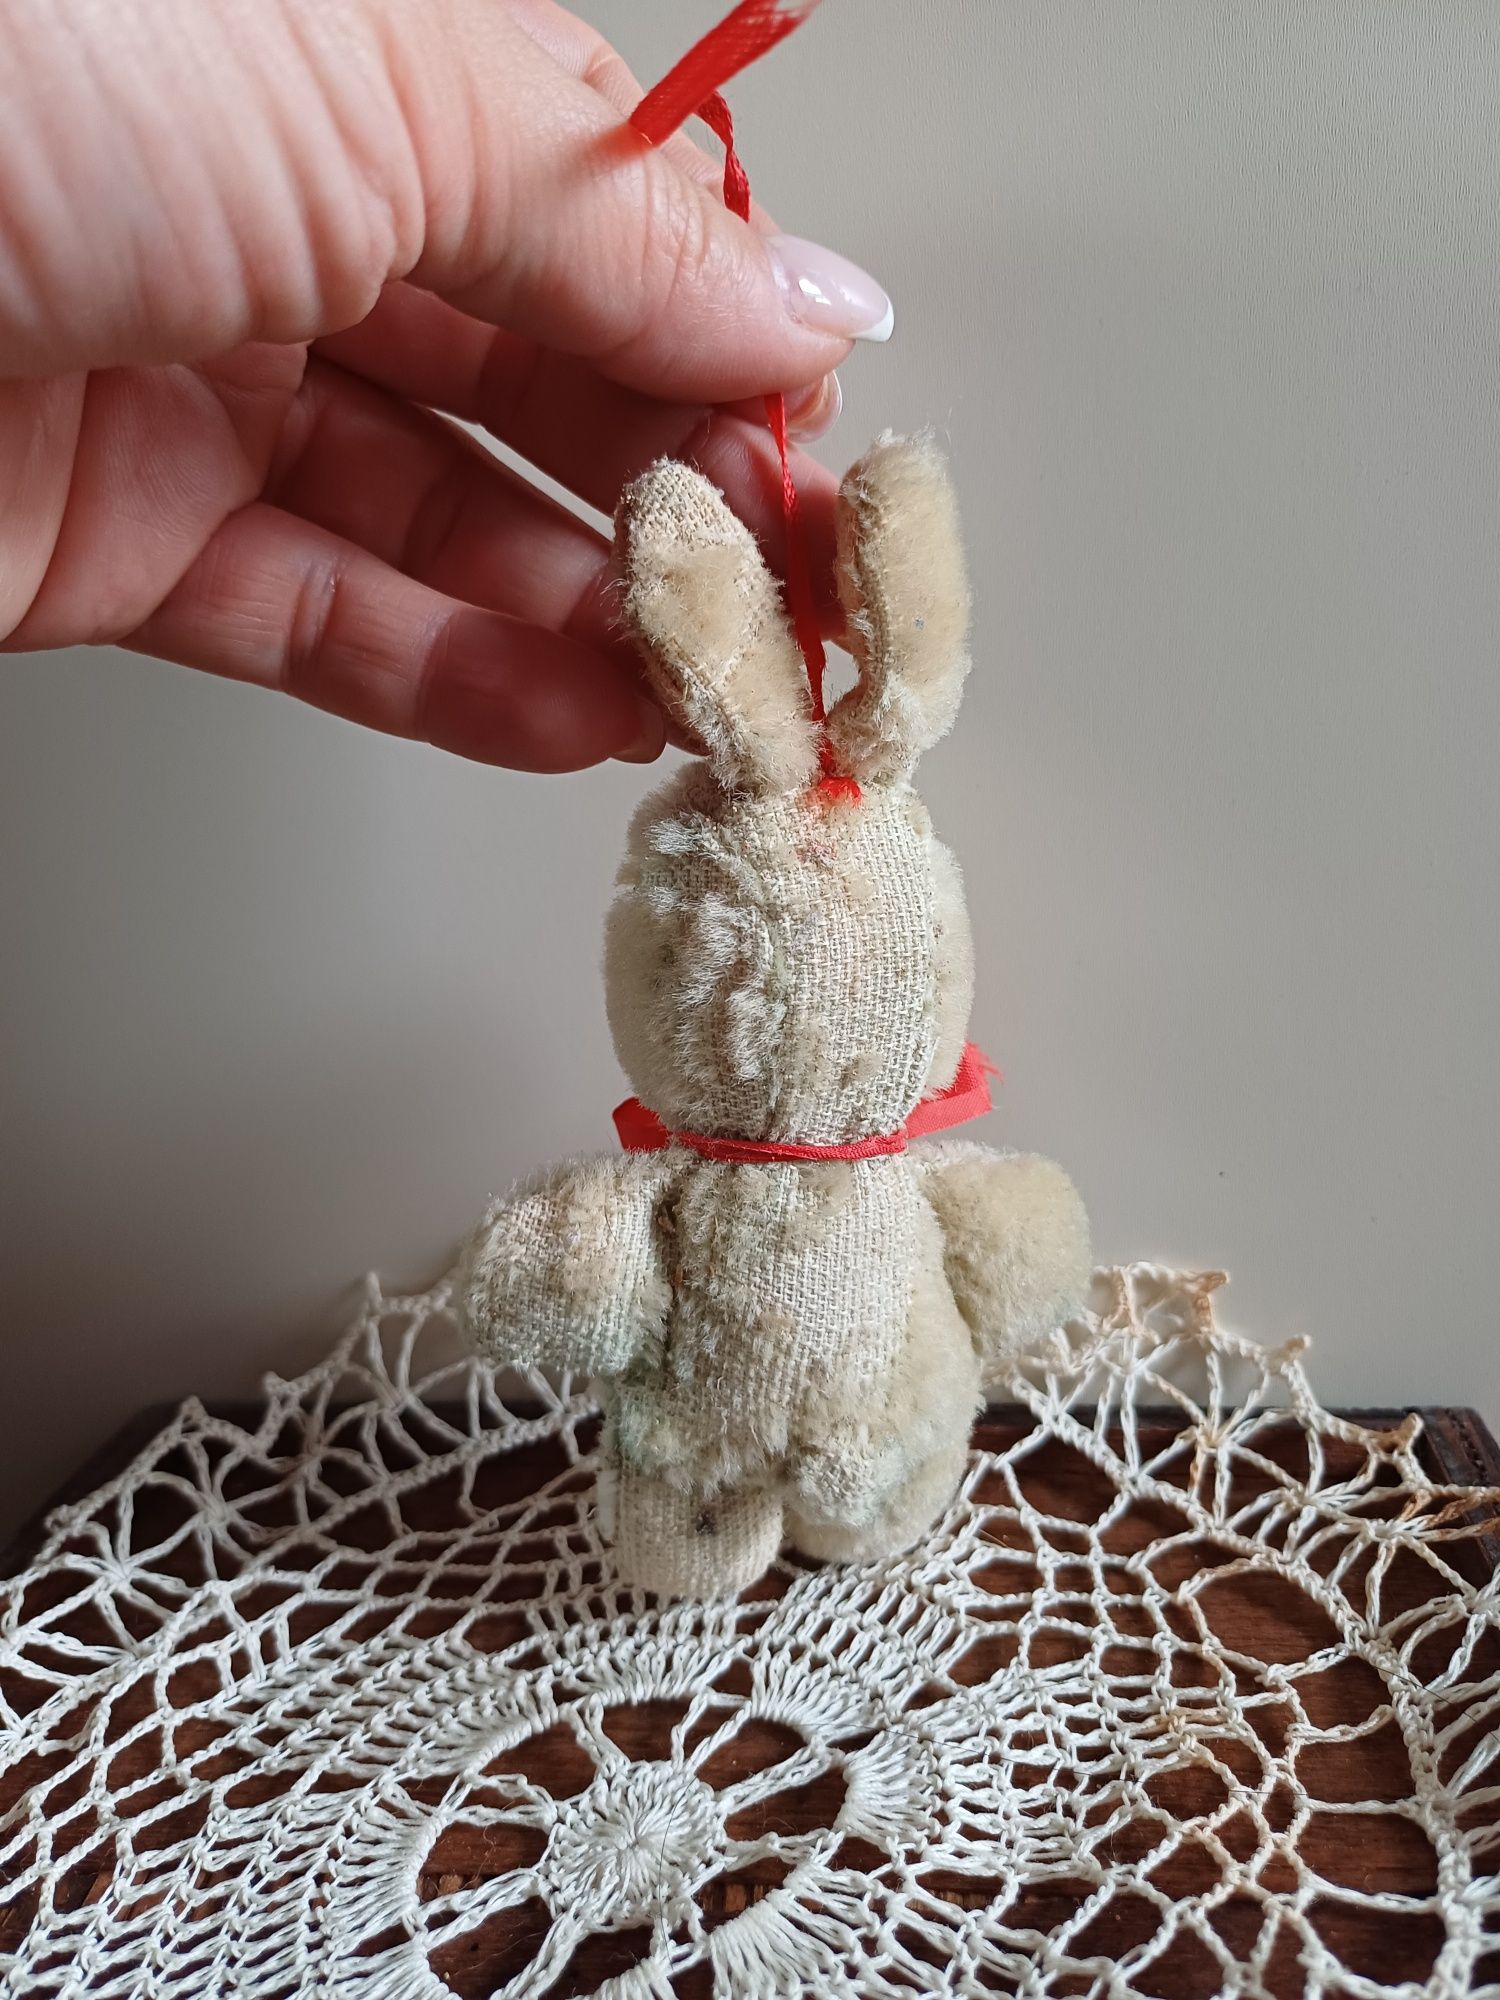 Króliczek królik zając steiff styl wełniany pluszowy stara zabawka